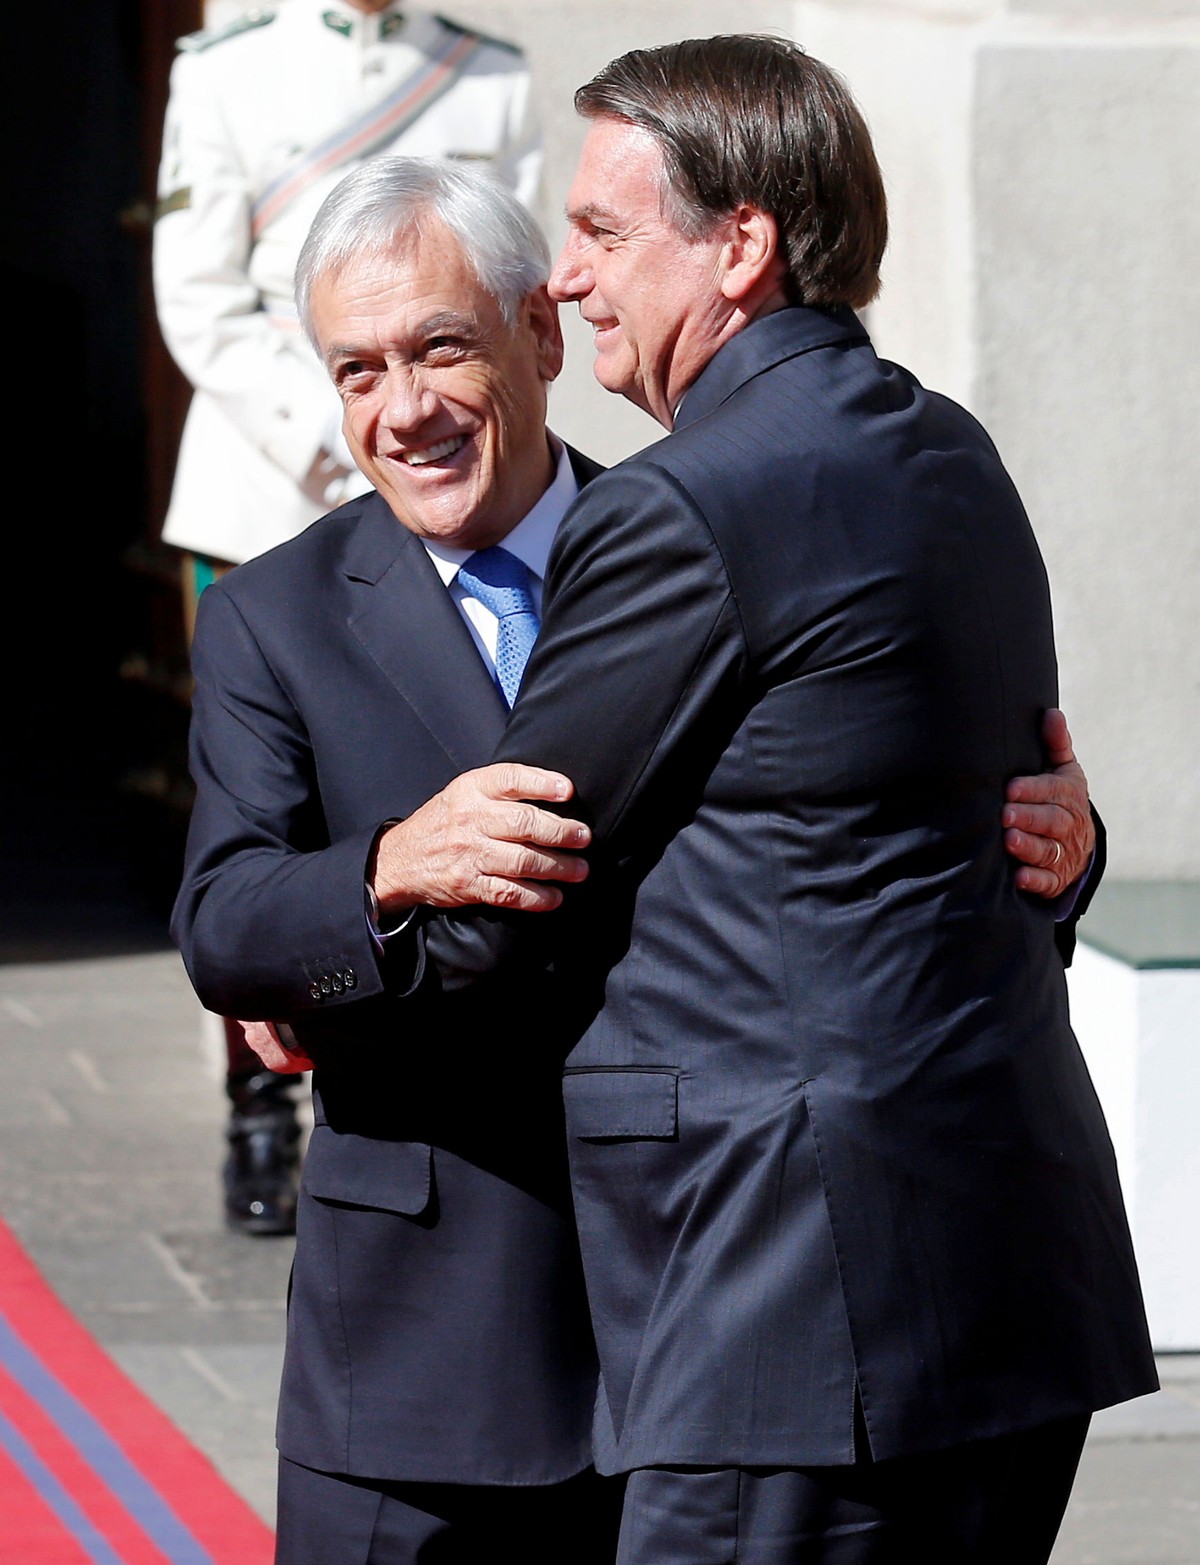 Bolsonaro se reúne con líderes sudamericanos en Chile |  política